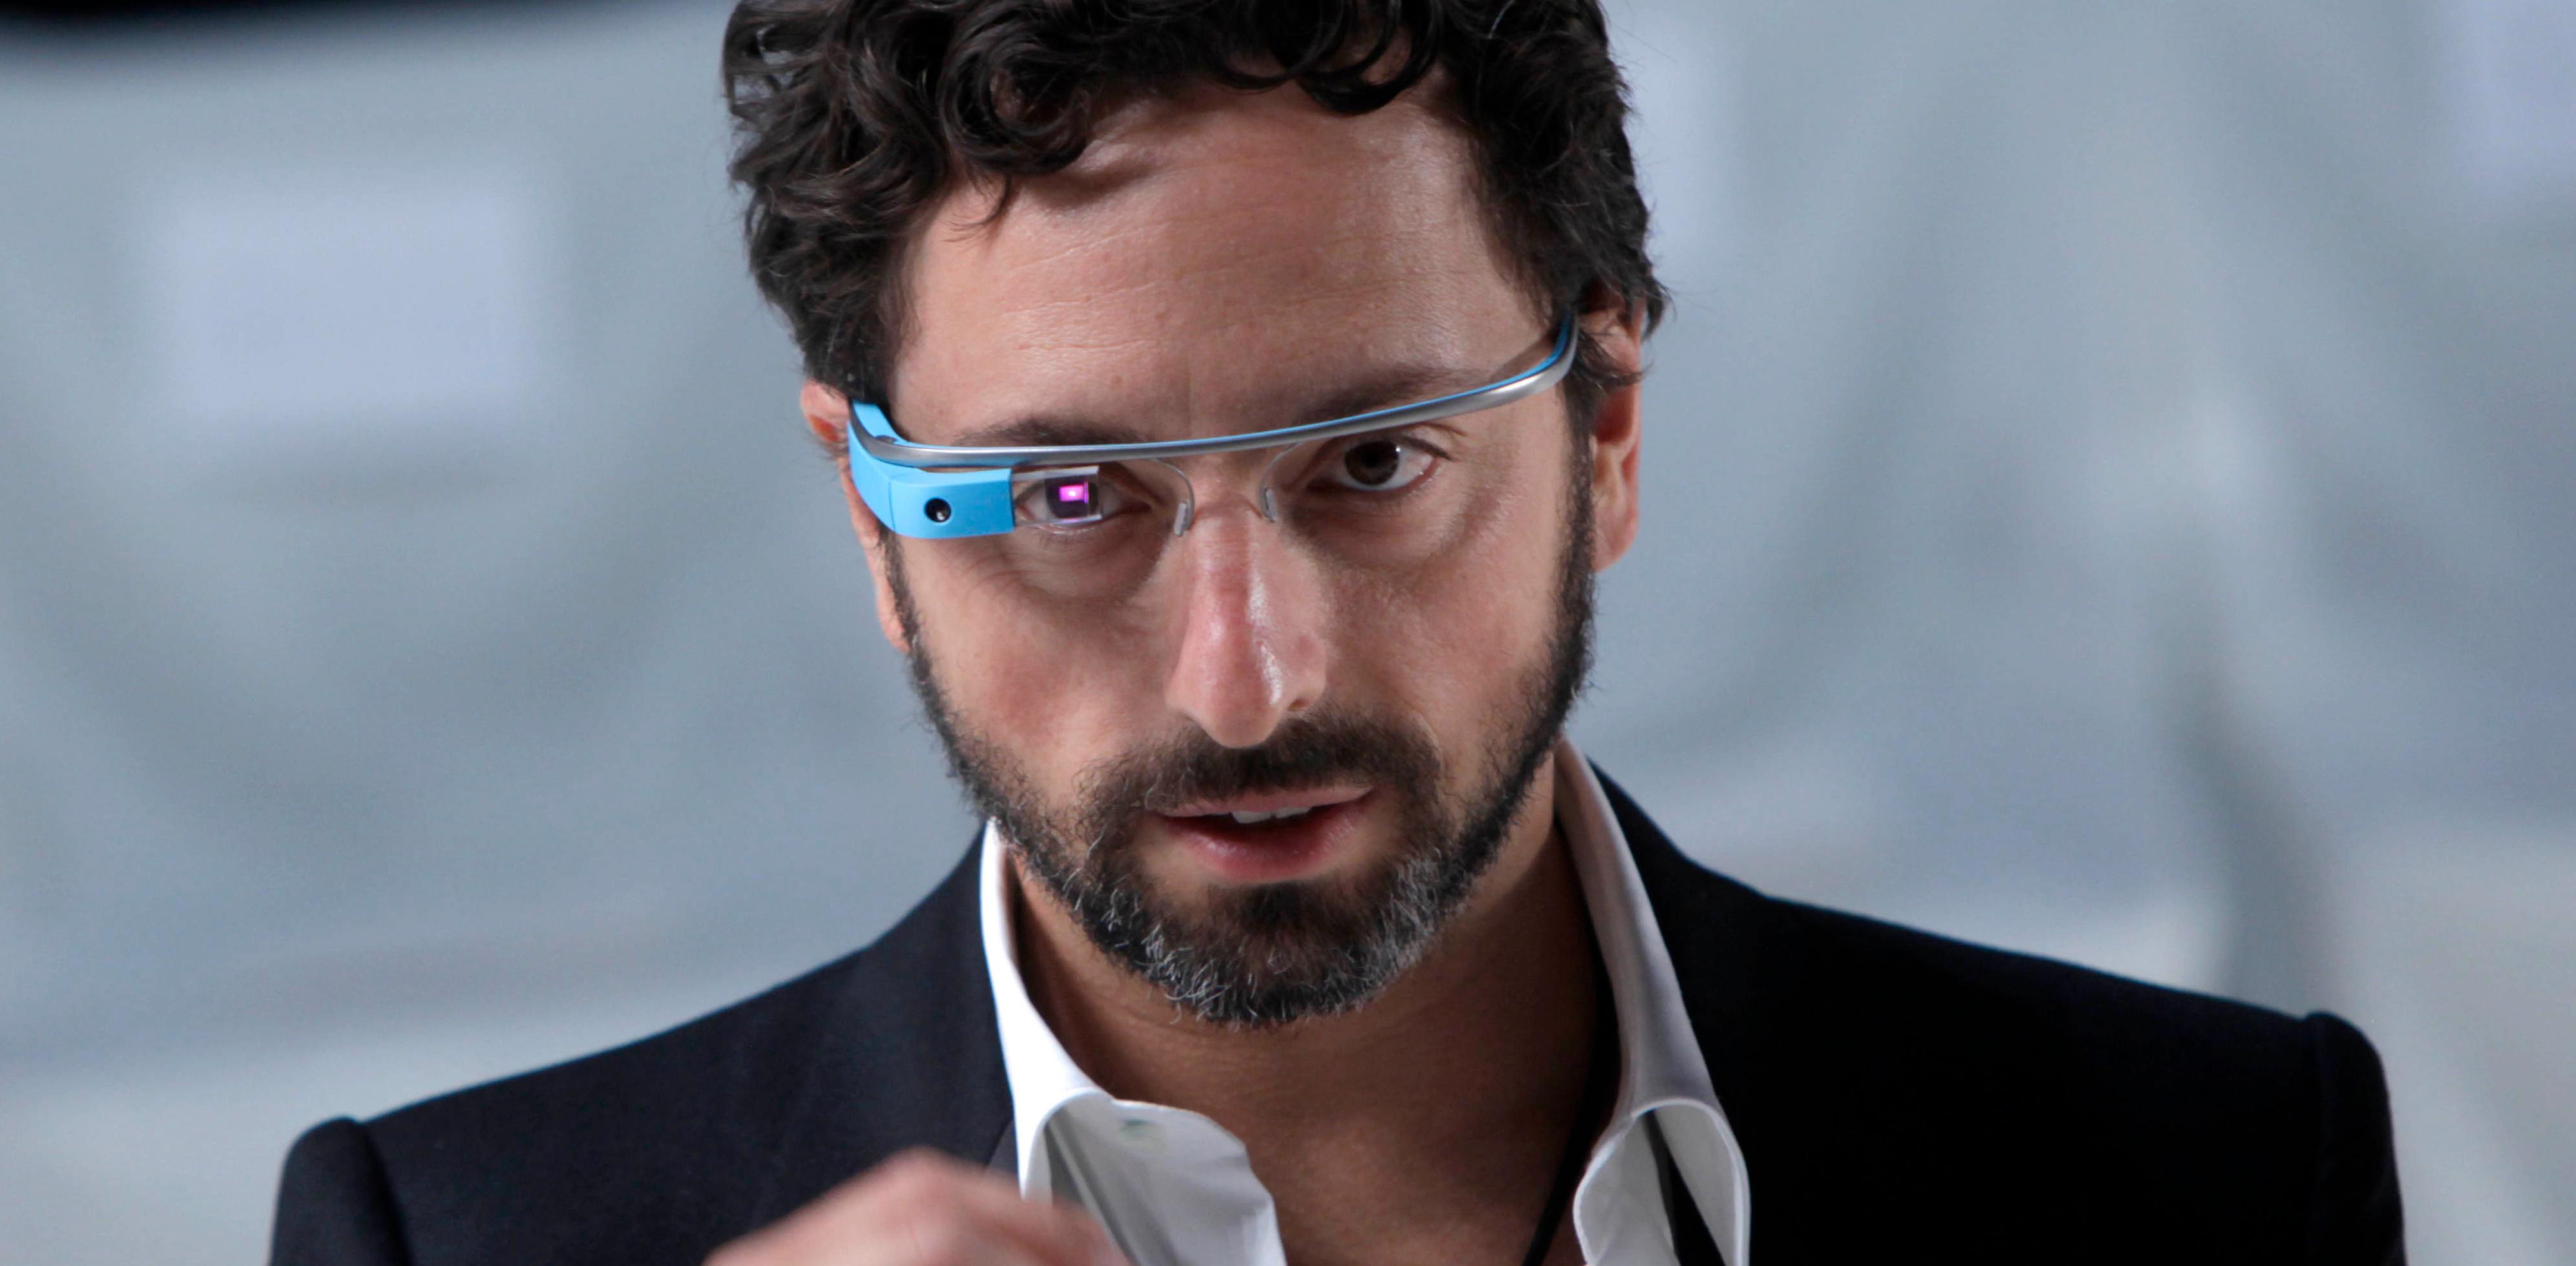 Nå kan du kjøpe de nye Google Glass-brillene